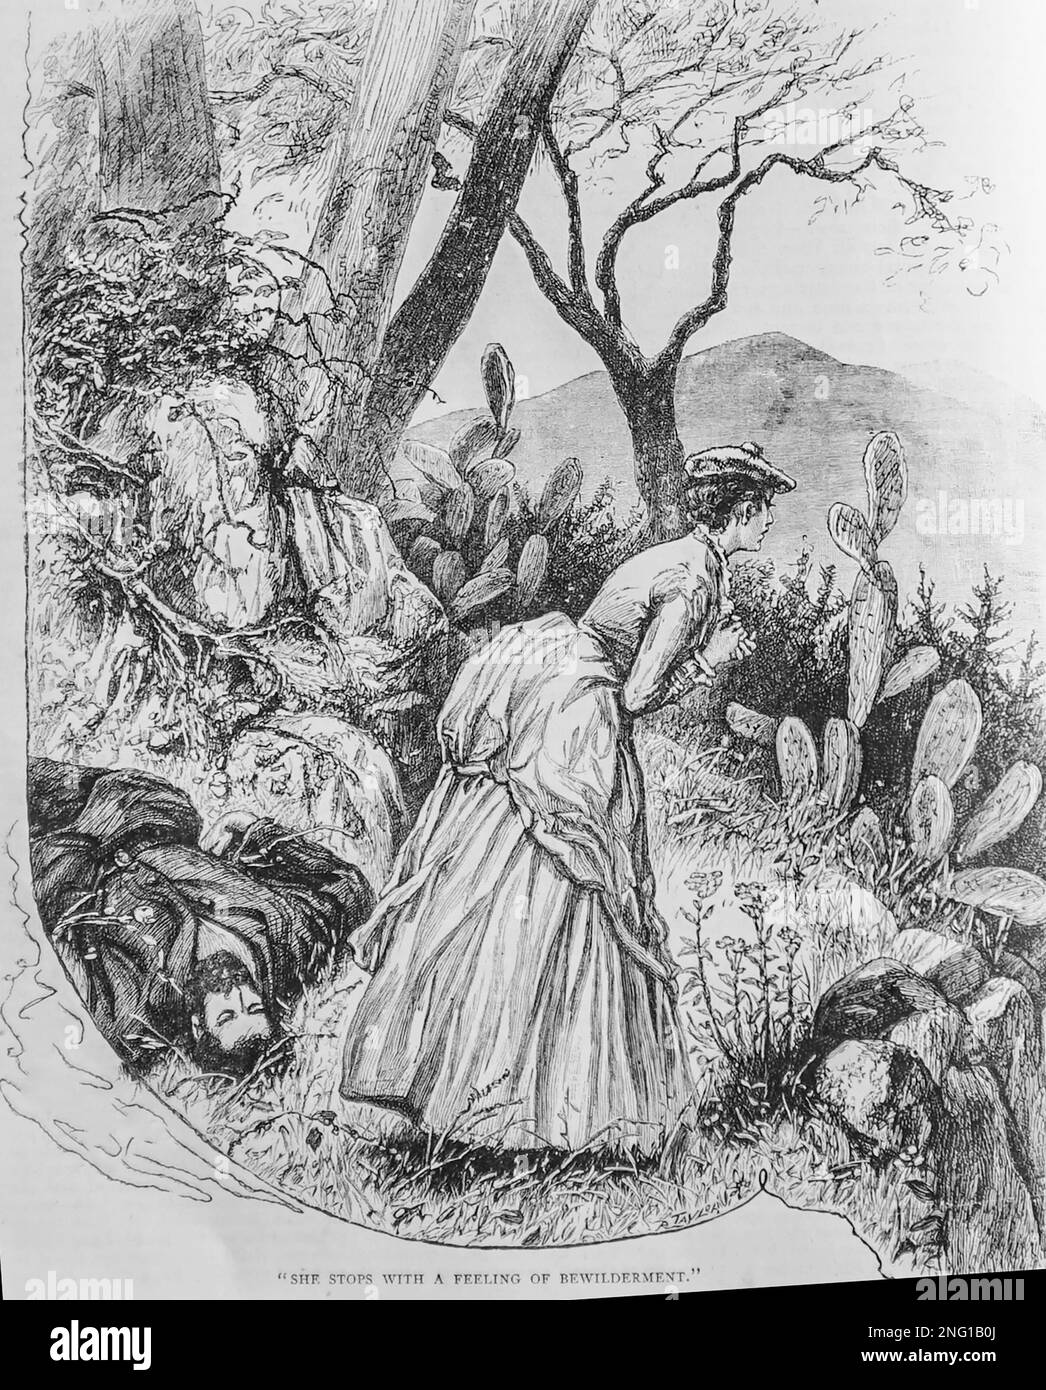 Uno schizzo del 19th ° secolo di una giovane donna in piedi accanto al suo padre inconscio, nella campagna corsa, come lei medita le sue opzioni per ottenere aiuto, dalla carta delle ragazze del 1888. Foto Stock